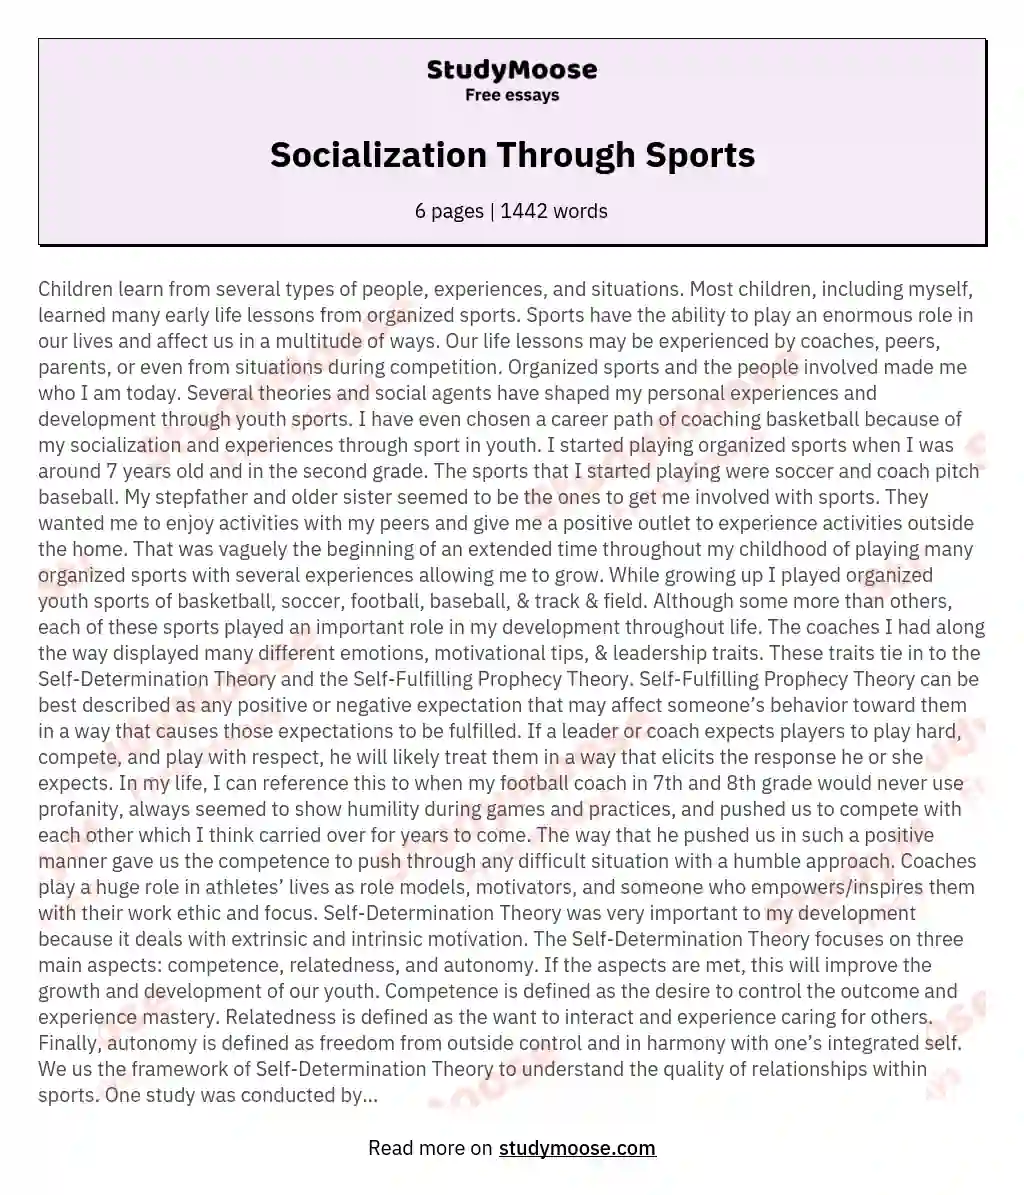 Socialization Through Sports essay